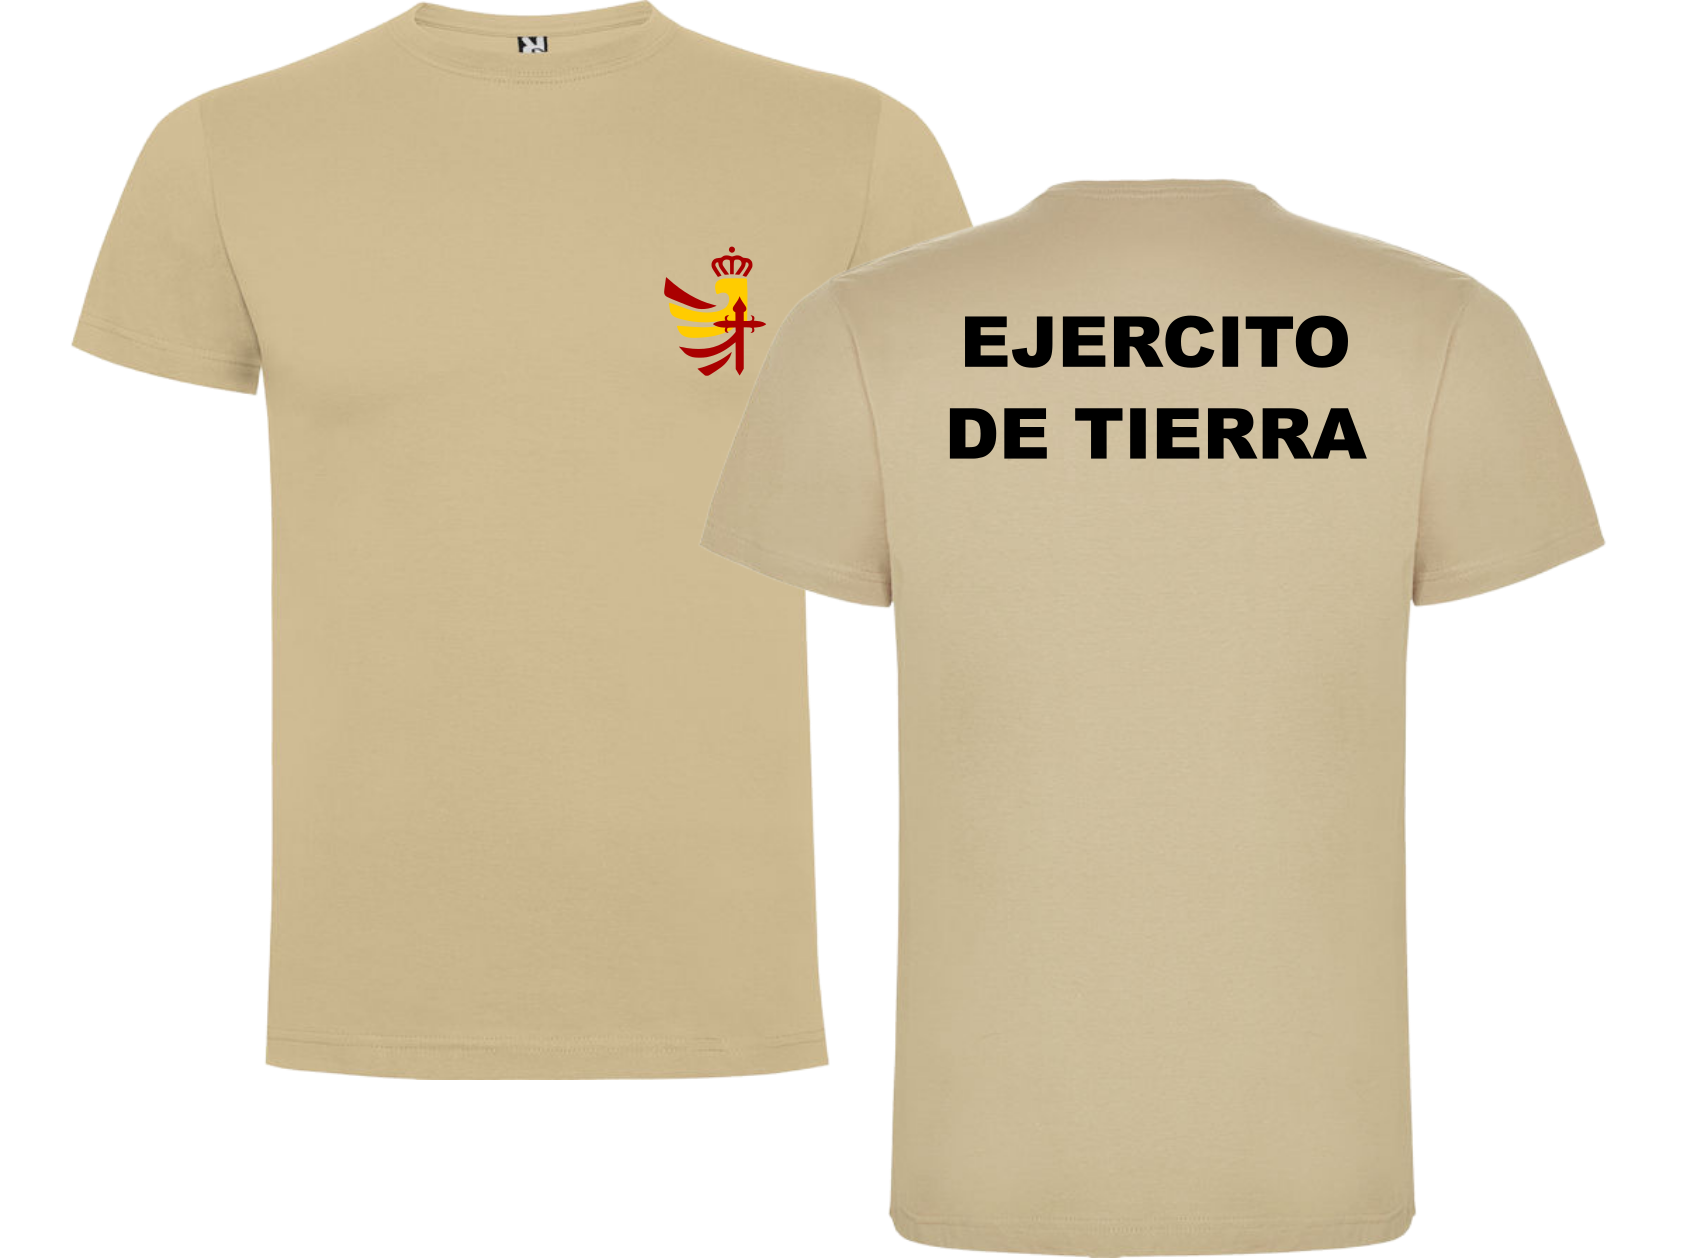 Camiseta marrón EJERCITO TIERRA. Talla S